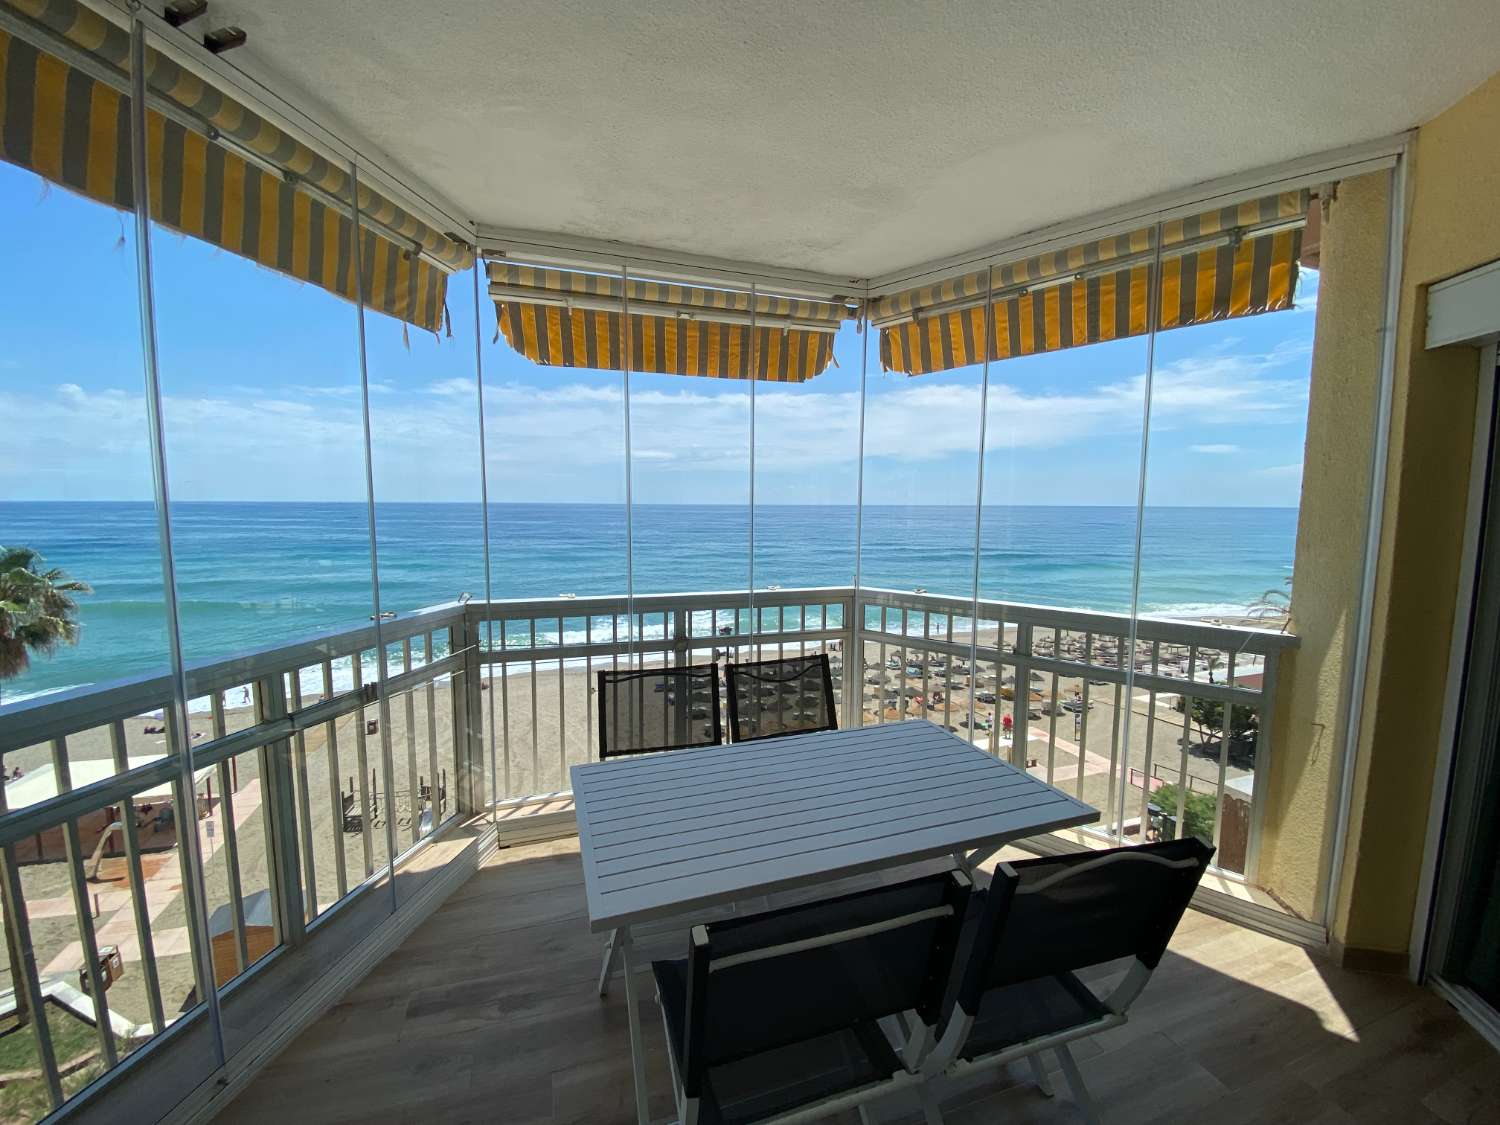 Ongelooflijk gerenoveerd appartement met panoramisch uitzicht op zee: het perfecte huis voor strandliefhebbers!&quot;